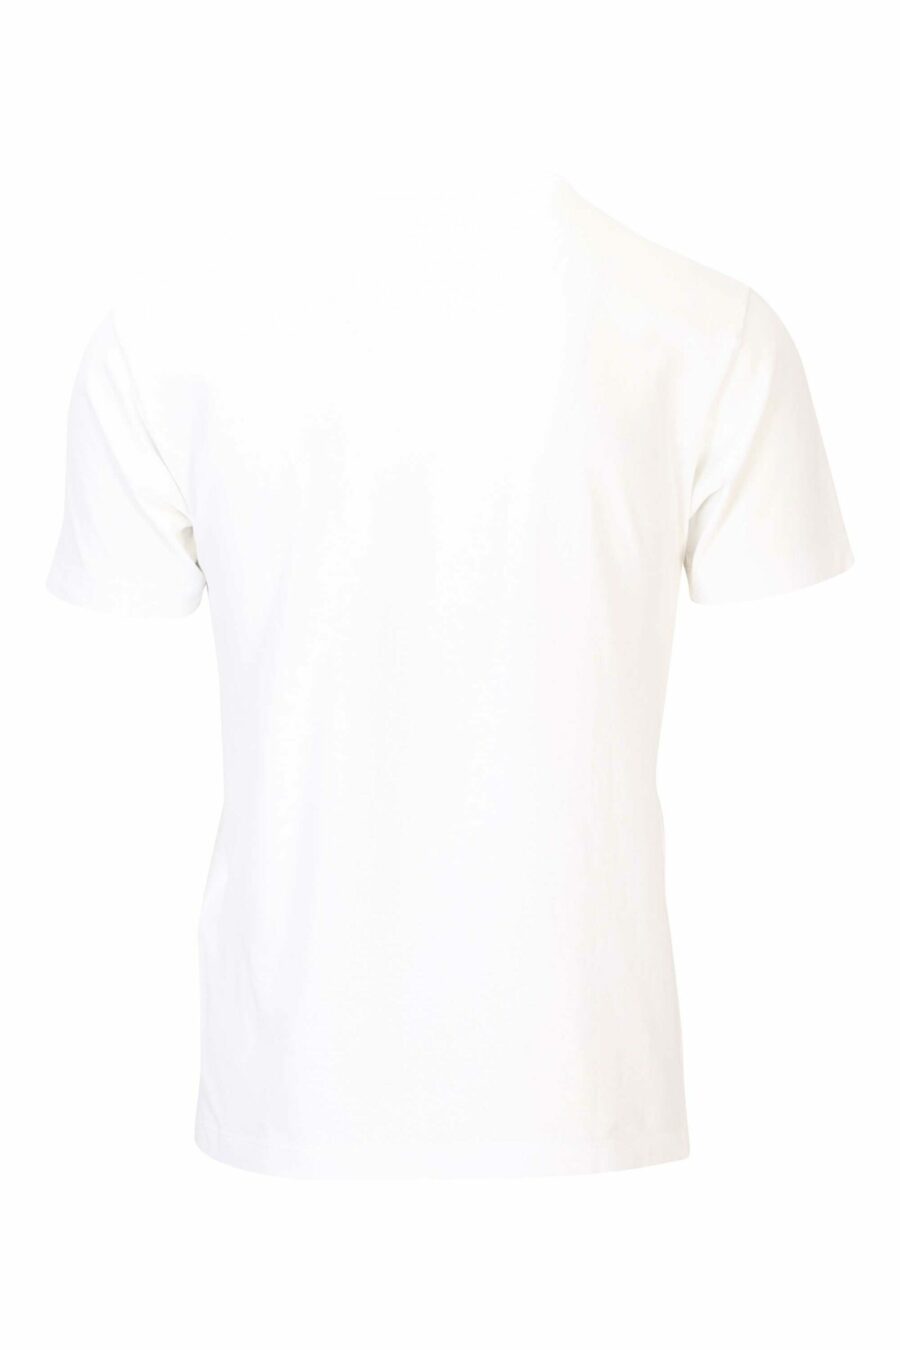 T-shirt blanc avec maxilogo circulaire sur le devant - 8052572742361 2 scaled